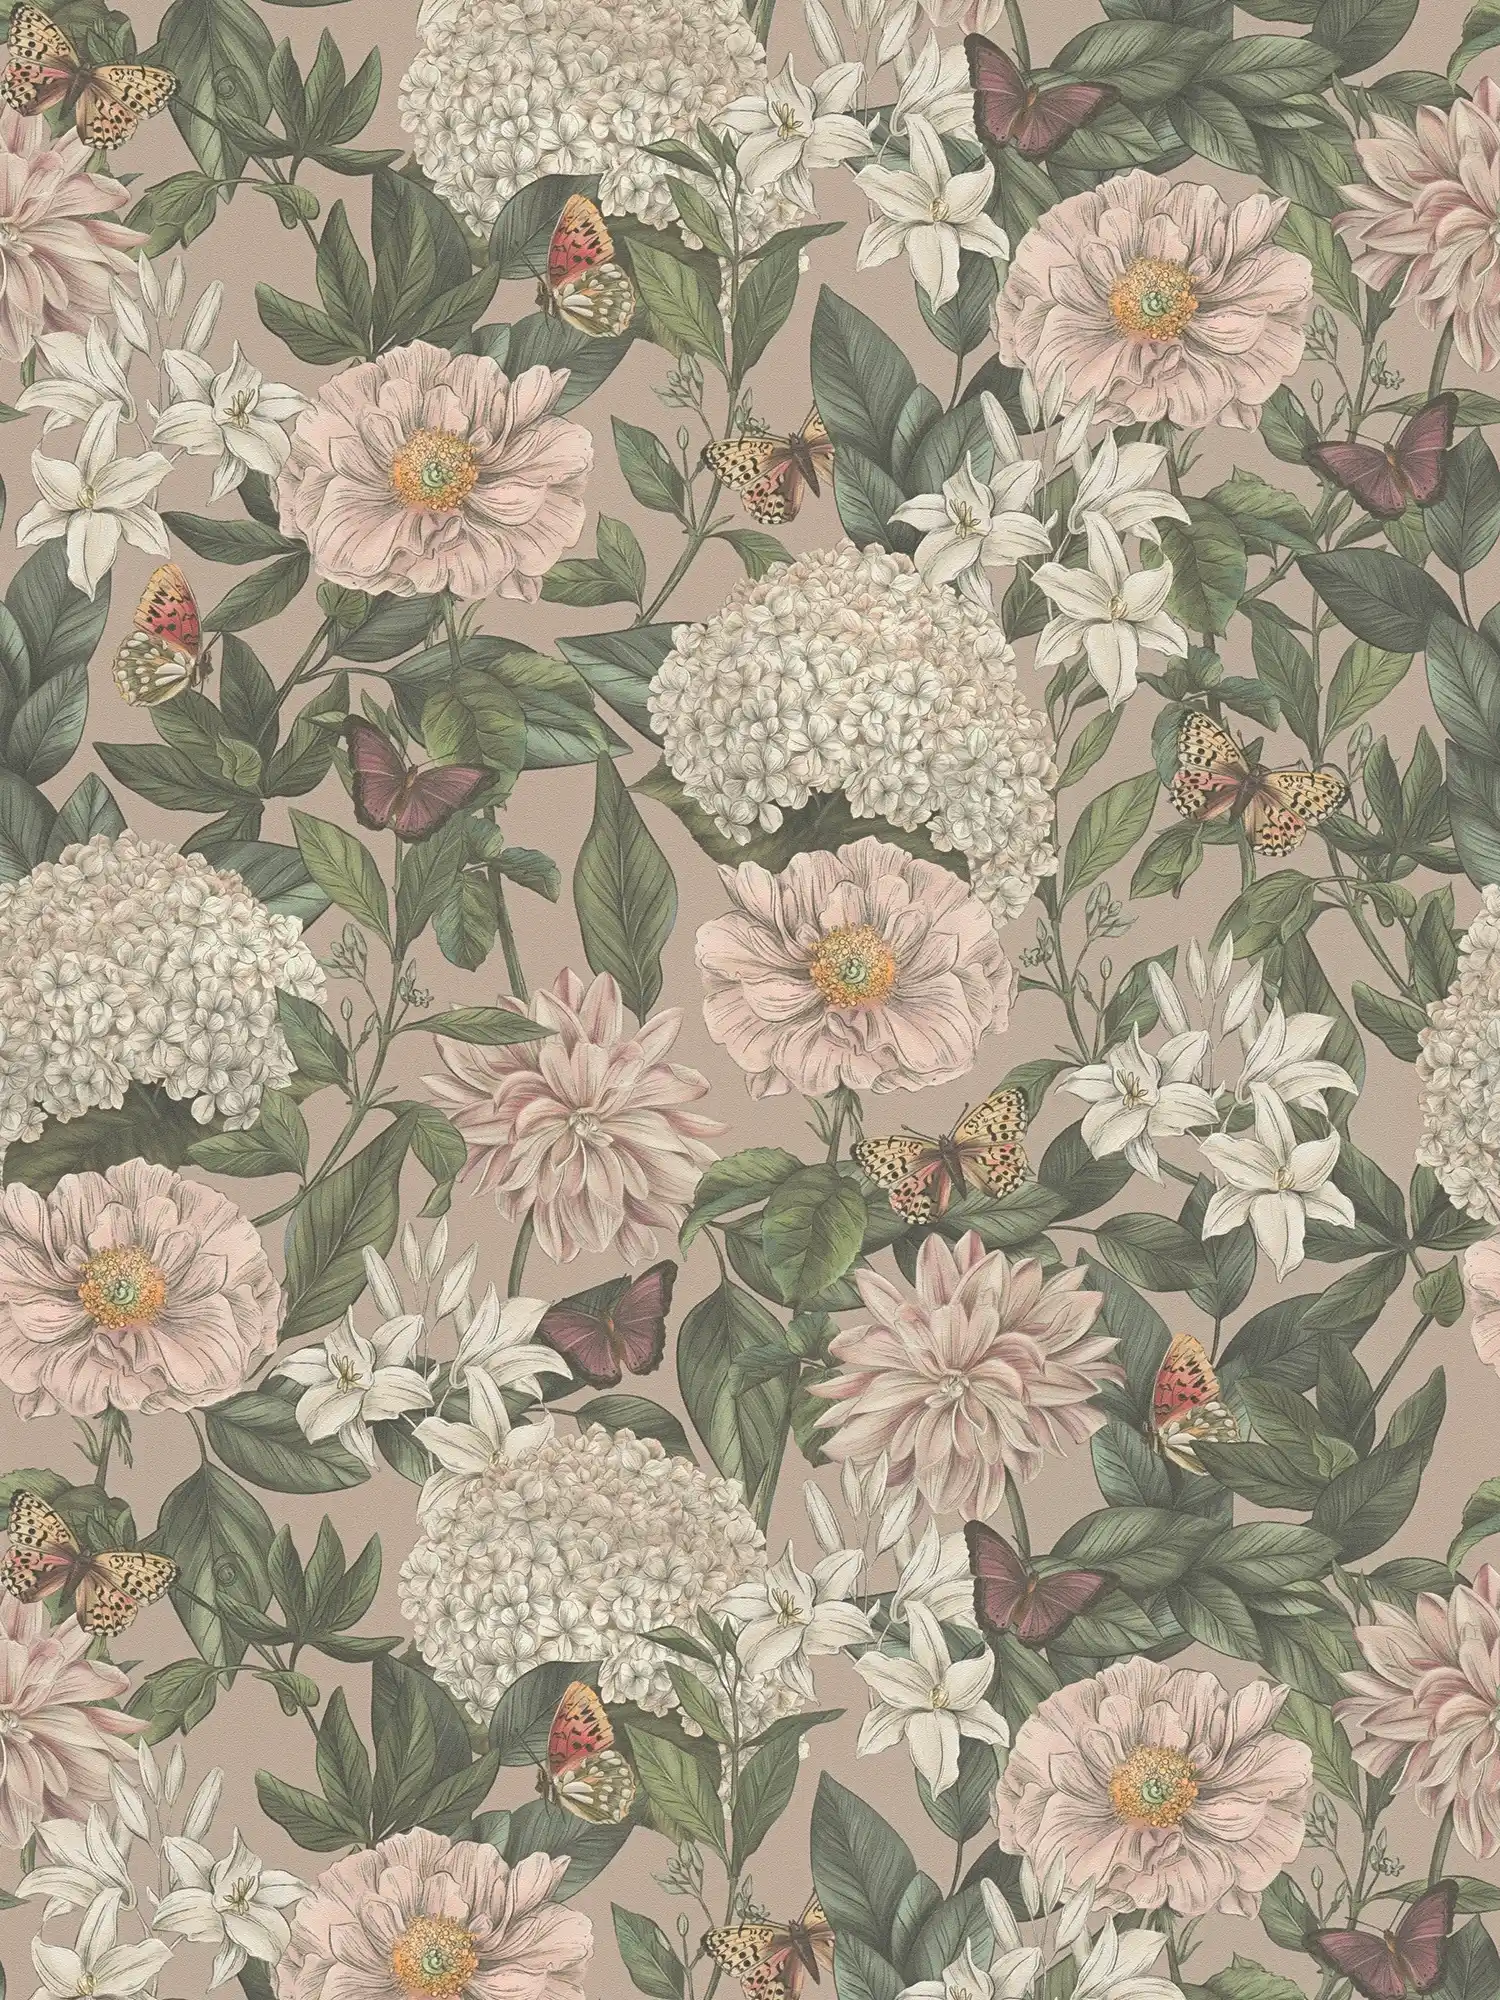 Florale Tapete modern mit Tieren & Blumen strukturiert matt – Rosa, Grün, Weiß
